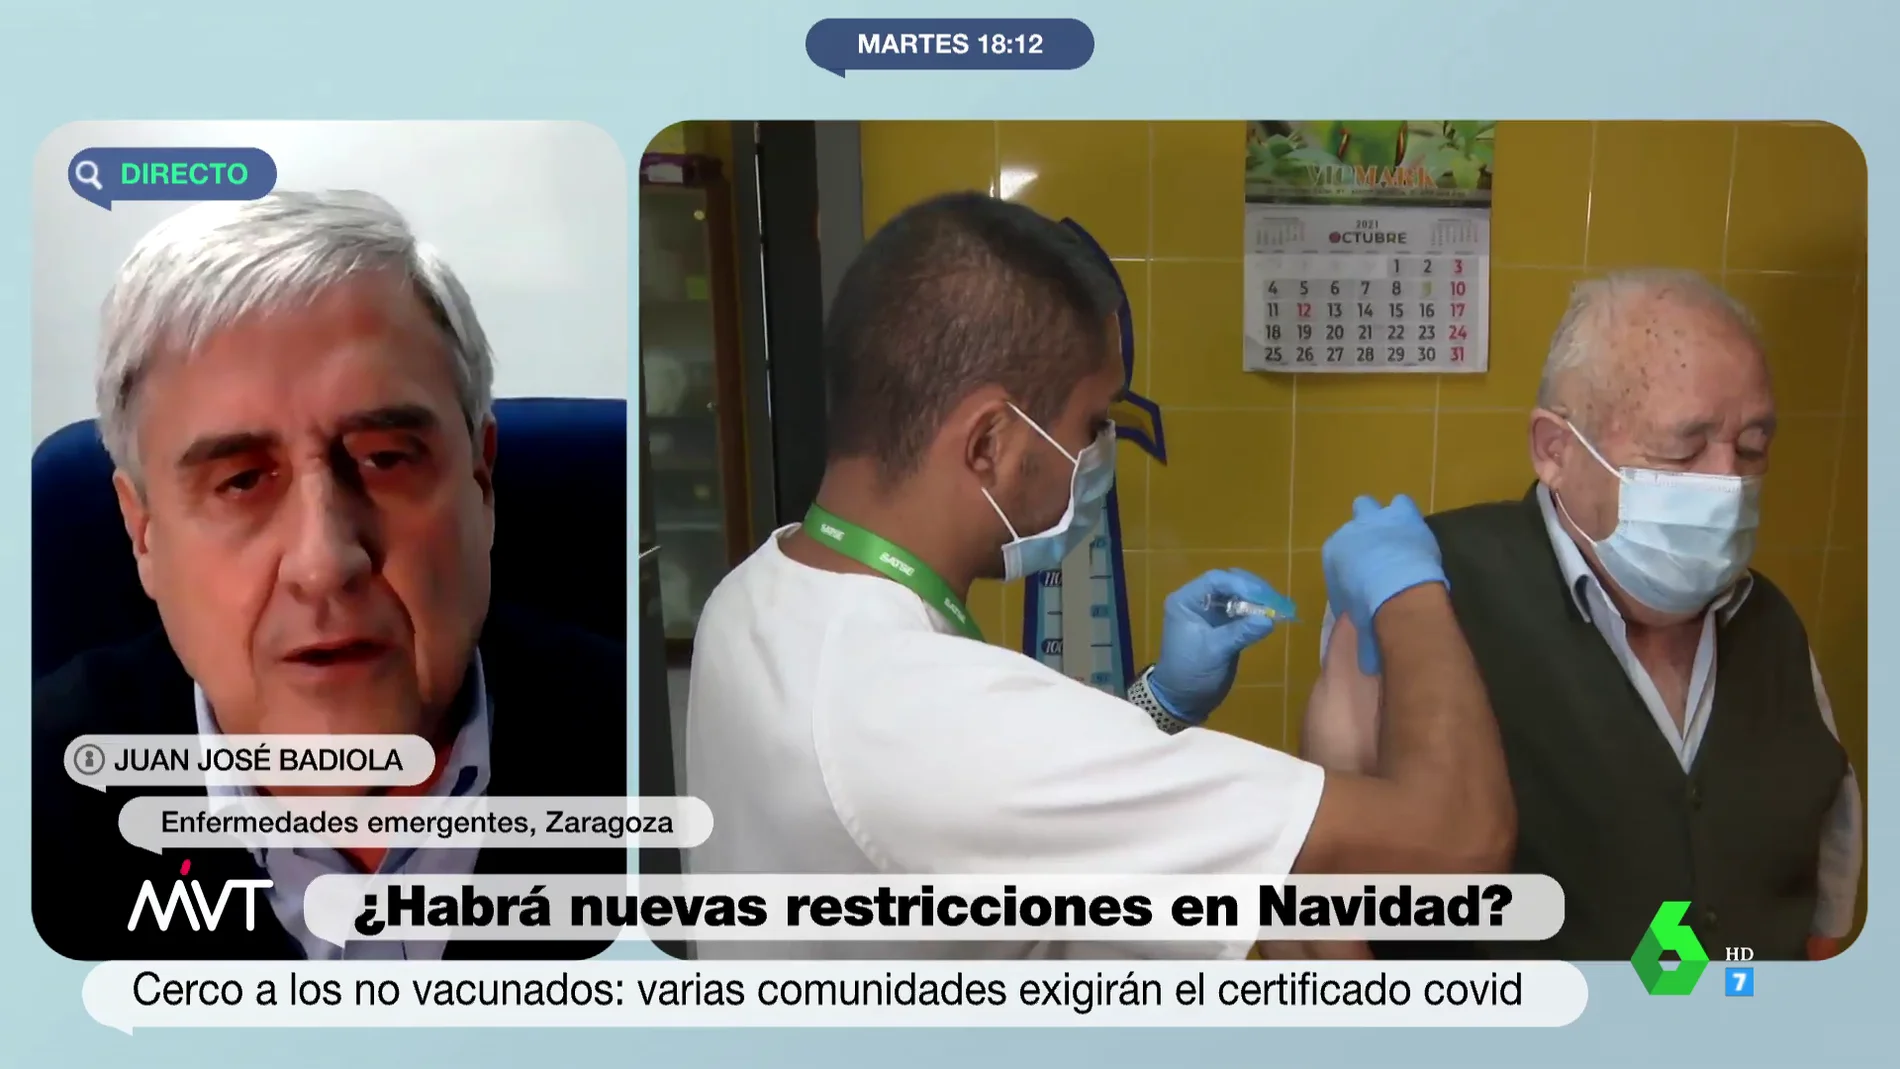 El doctor Badiola advierte sobre el aumento de casos: "Se ha tenido una percepción de que la vacunación significaba el fin de la pandemia"